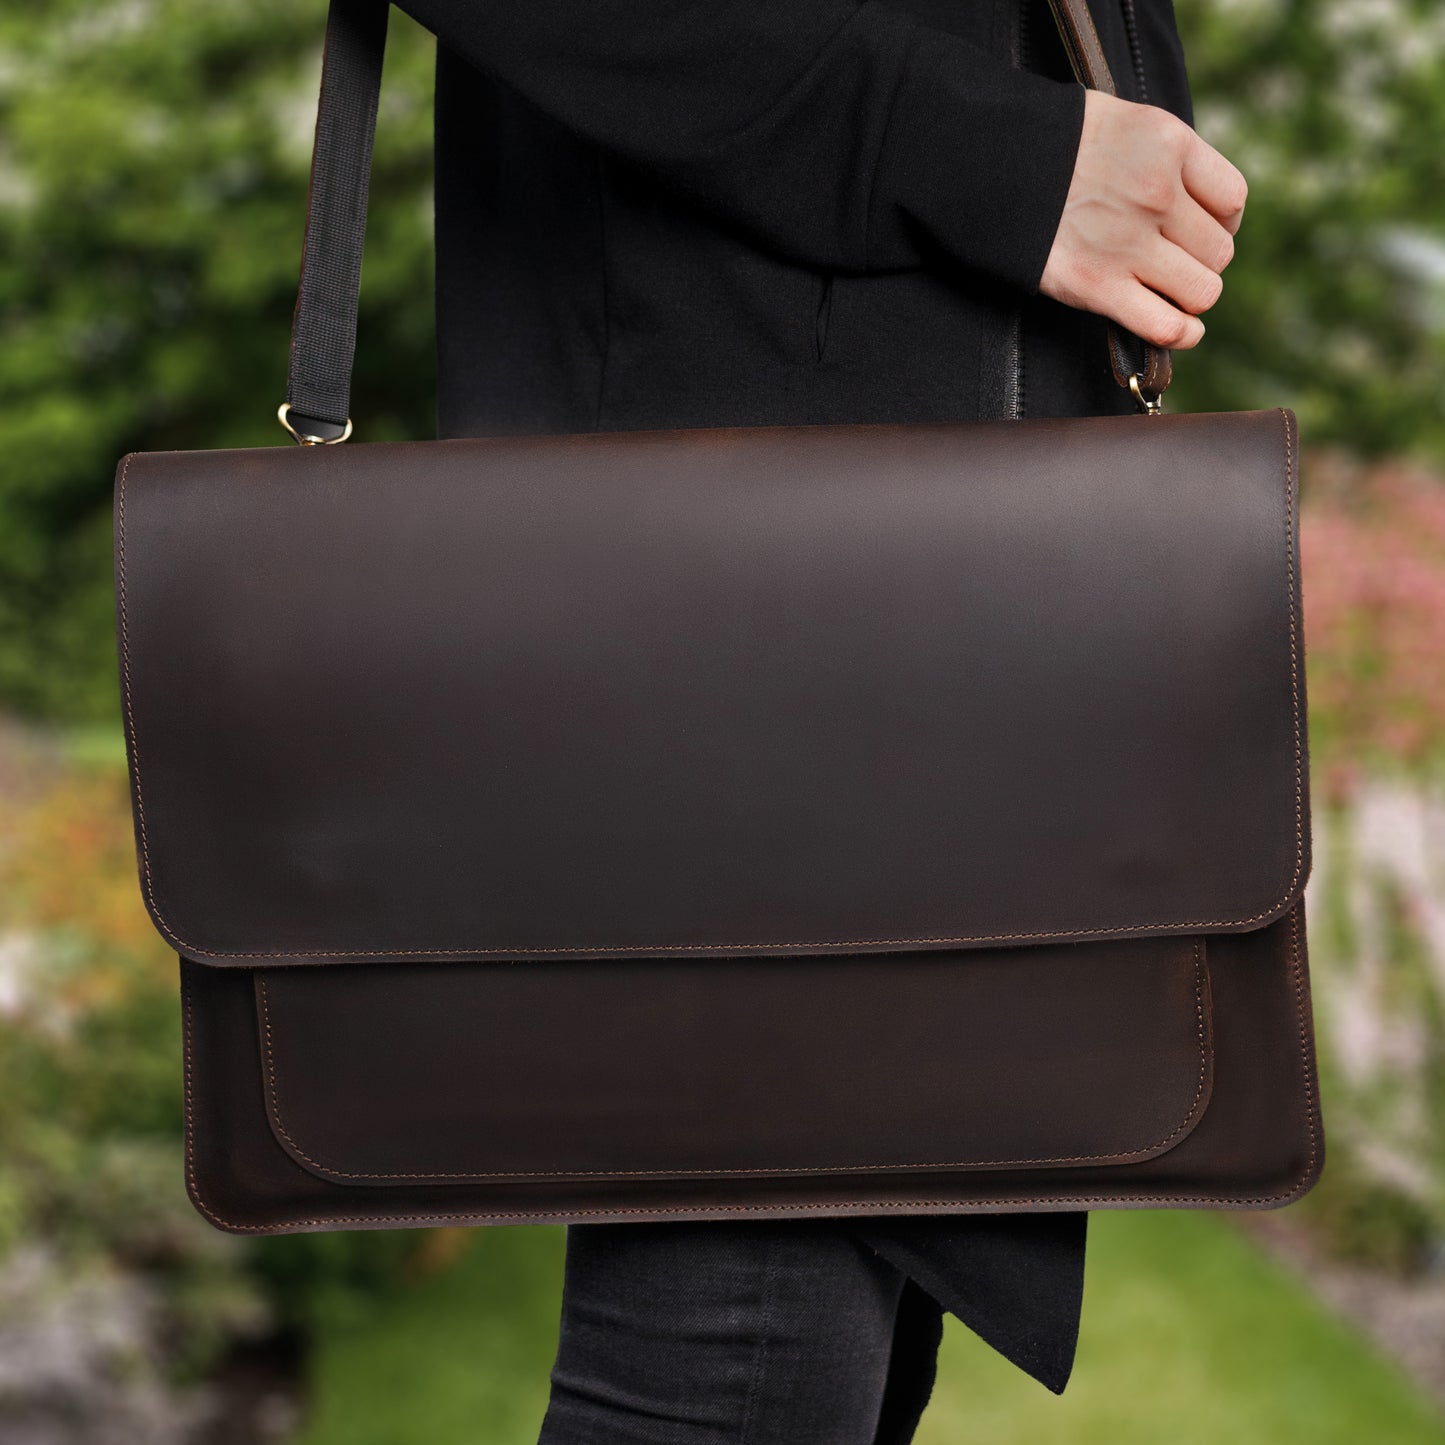 Leather Bag for Laptop, Mens Leather Laptop Sleeve, Macbook Messenger Bag